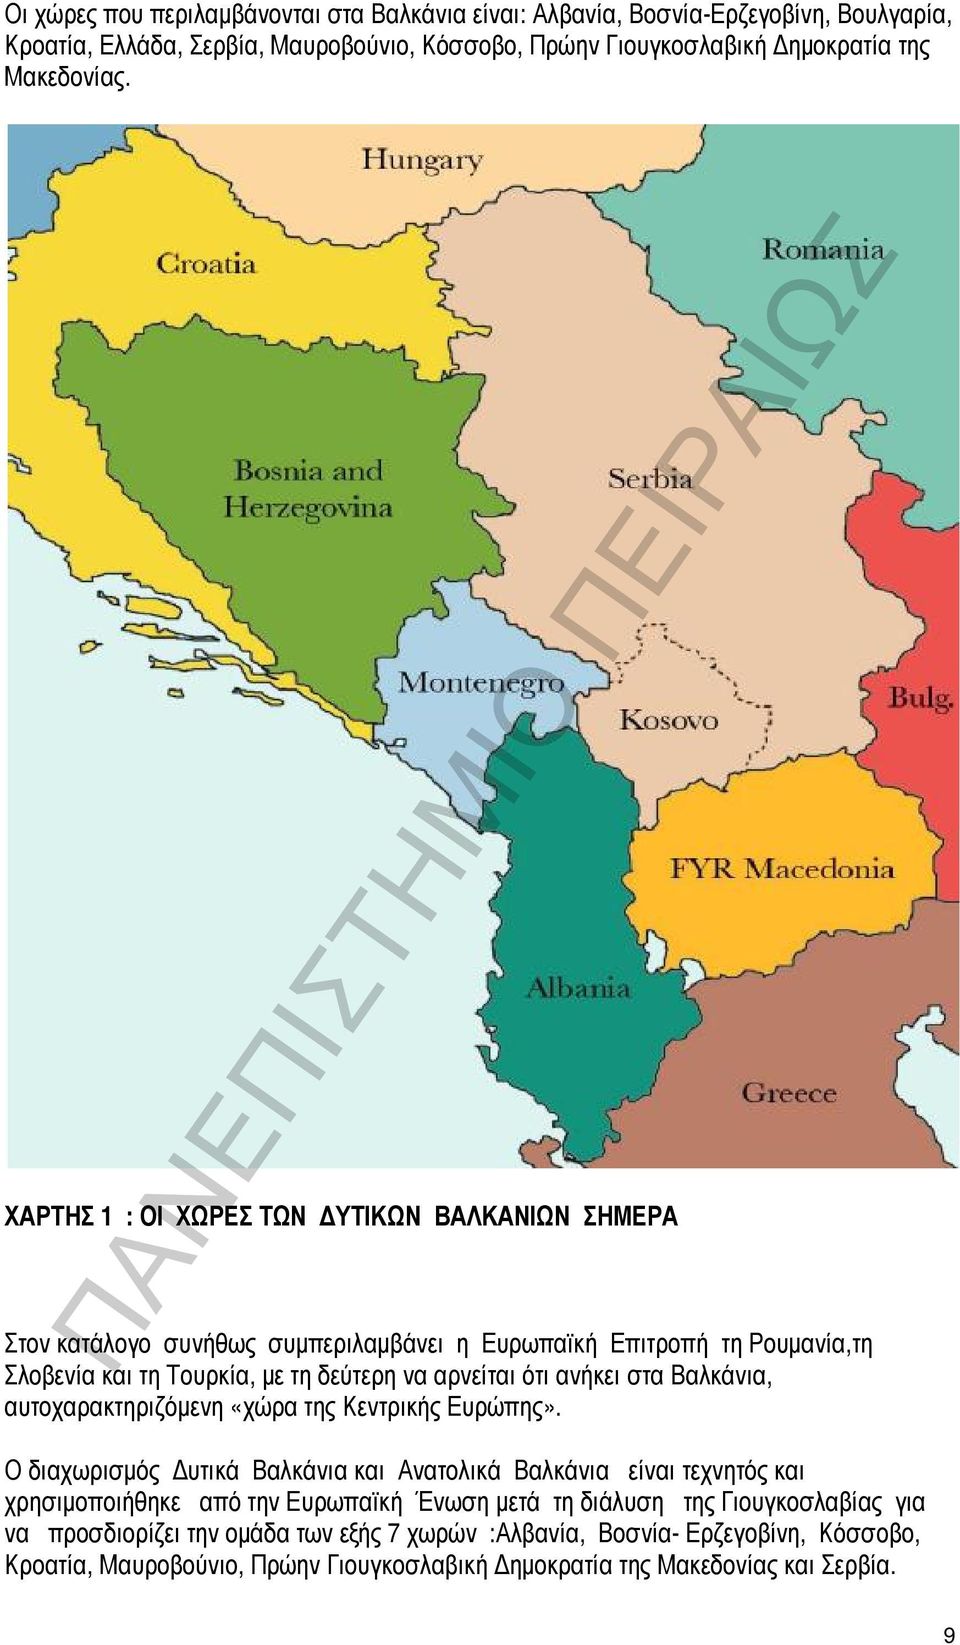 στα Βαλκάνια, αυτοχαρακτηριζόμενη «χώρα της Κεντρικής Ευρώπης».